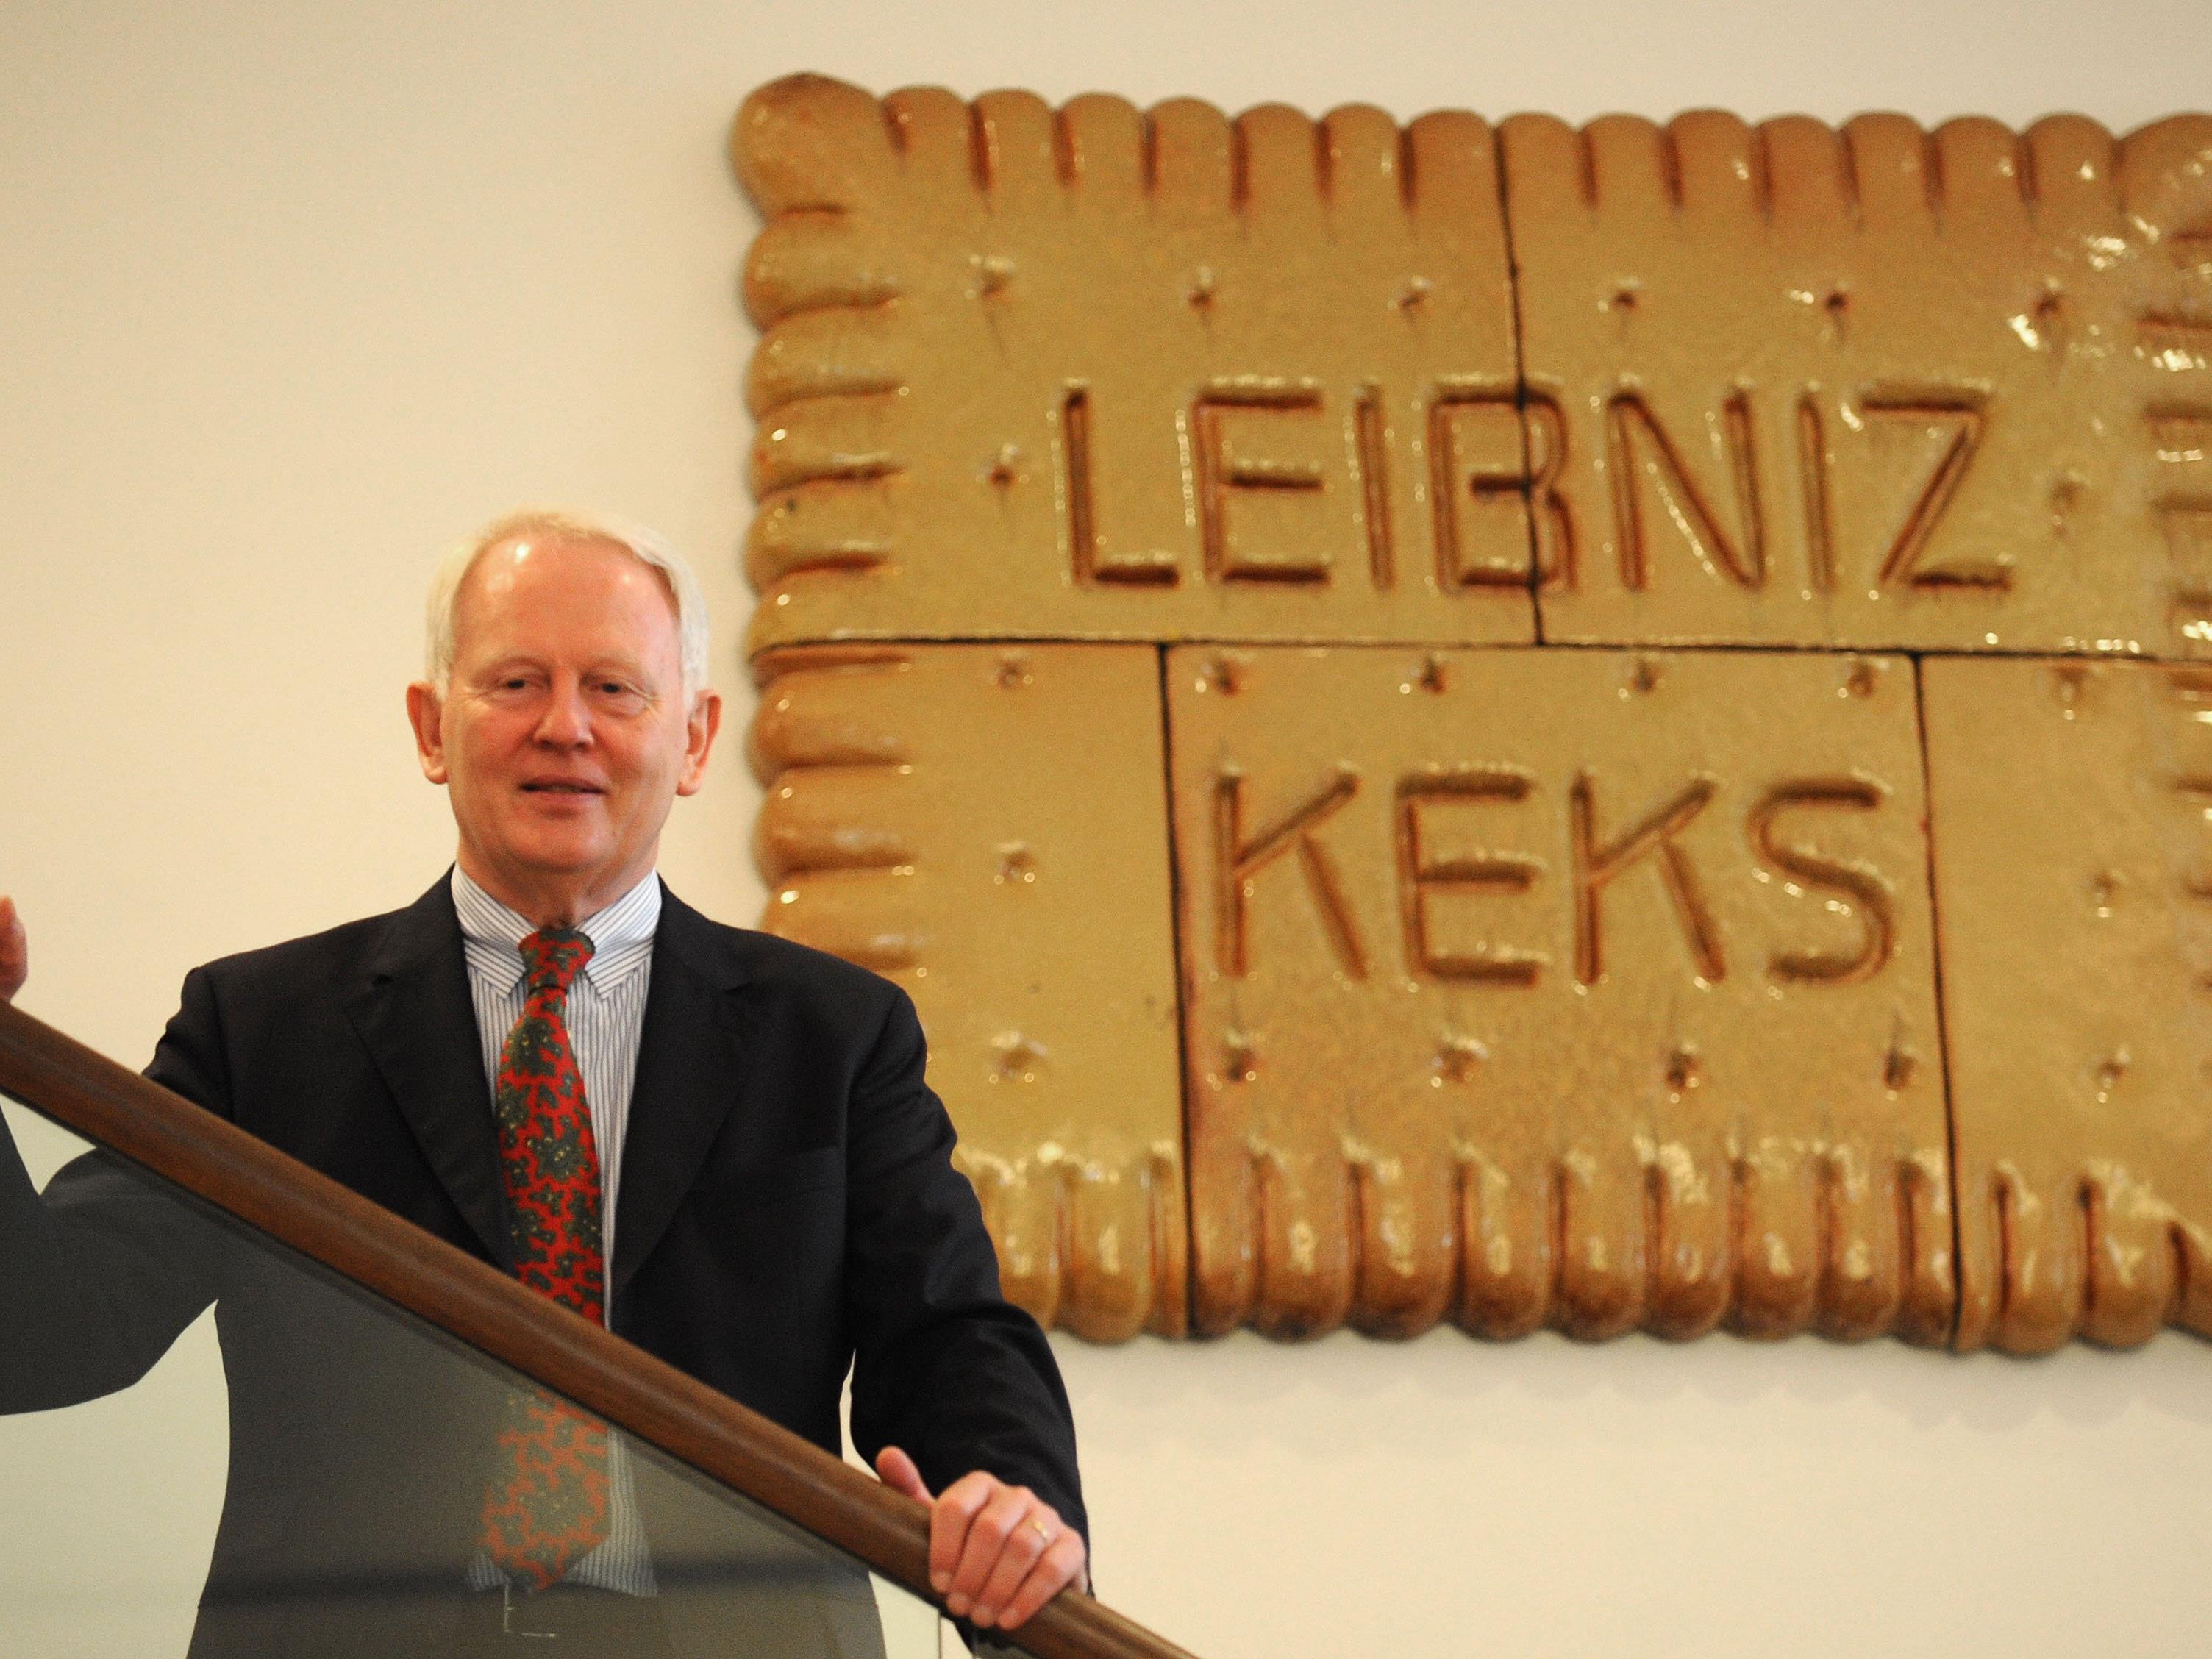 Der Leibniz Keks feiert 125-jähriges Jubiläum.